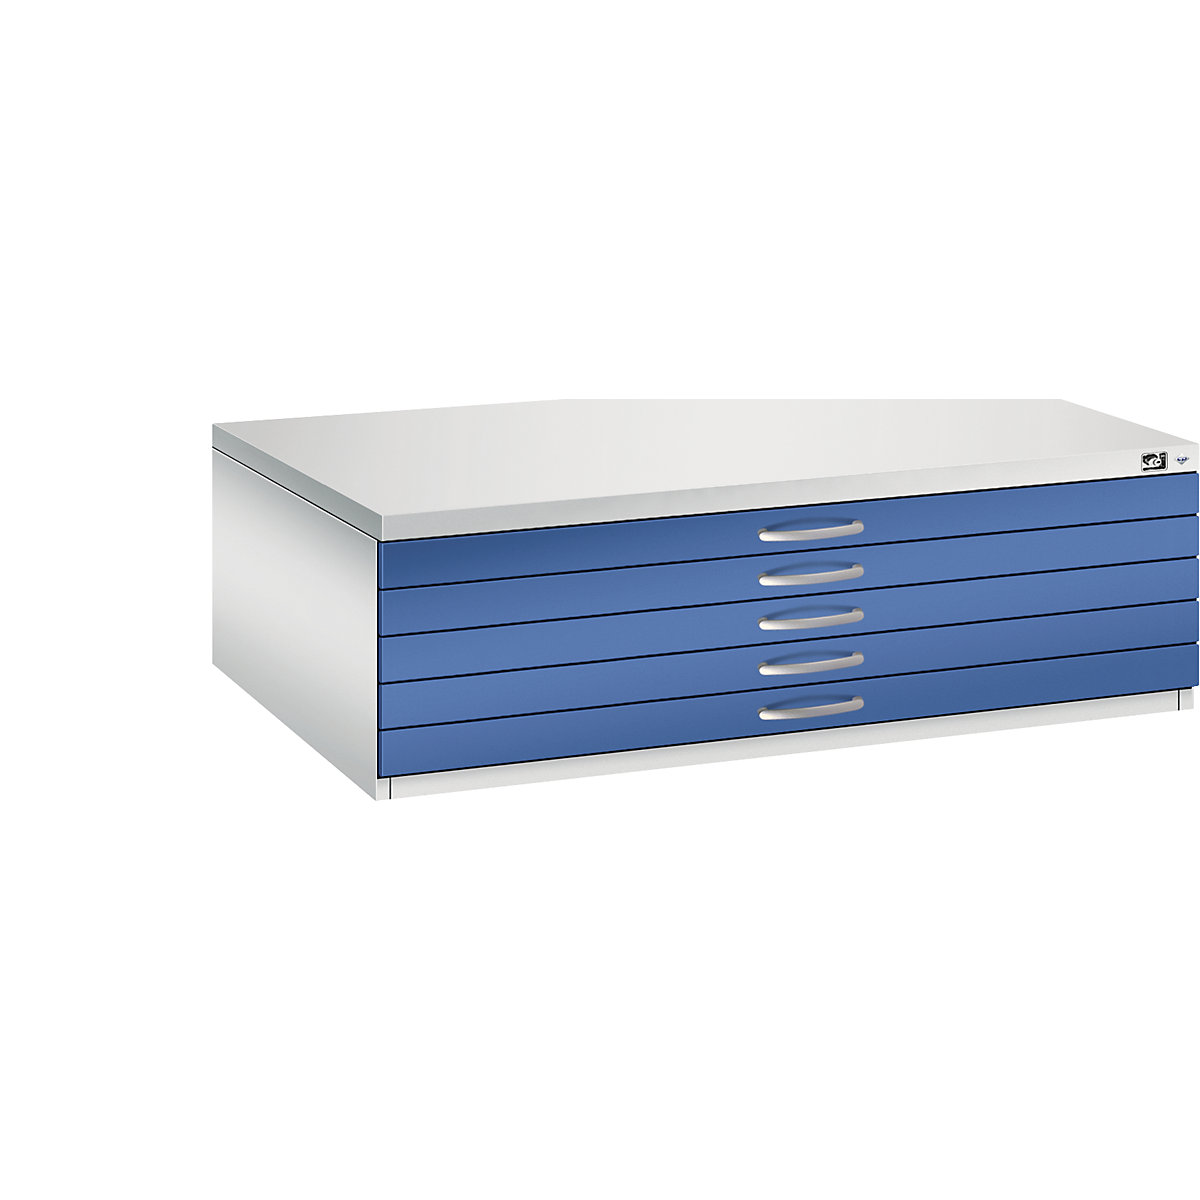 C+P Zeichnungsschrank, DIN A0, 5 Schubladen, Höhe 420 mm, lichtgrau / enzianblau